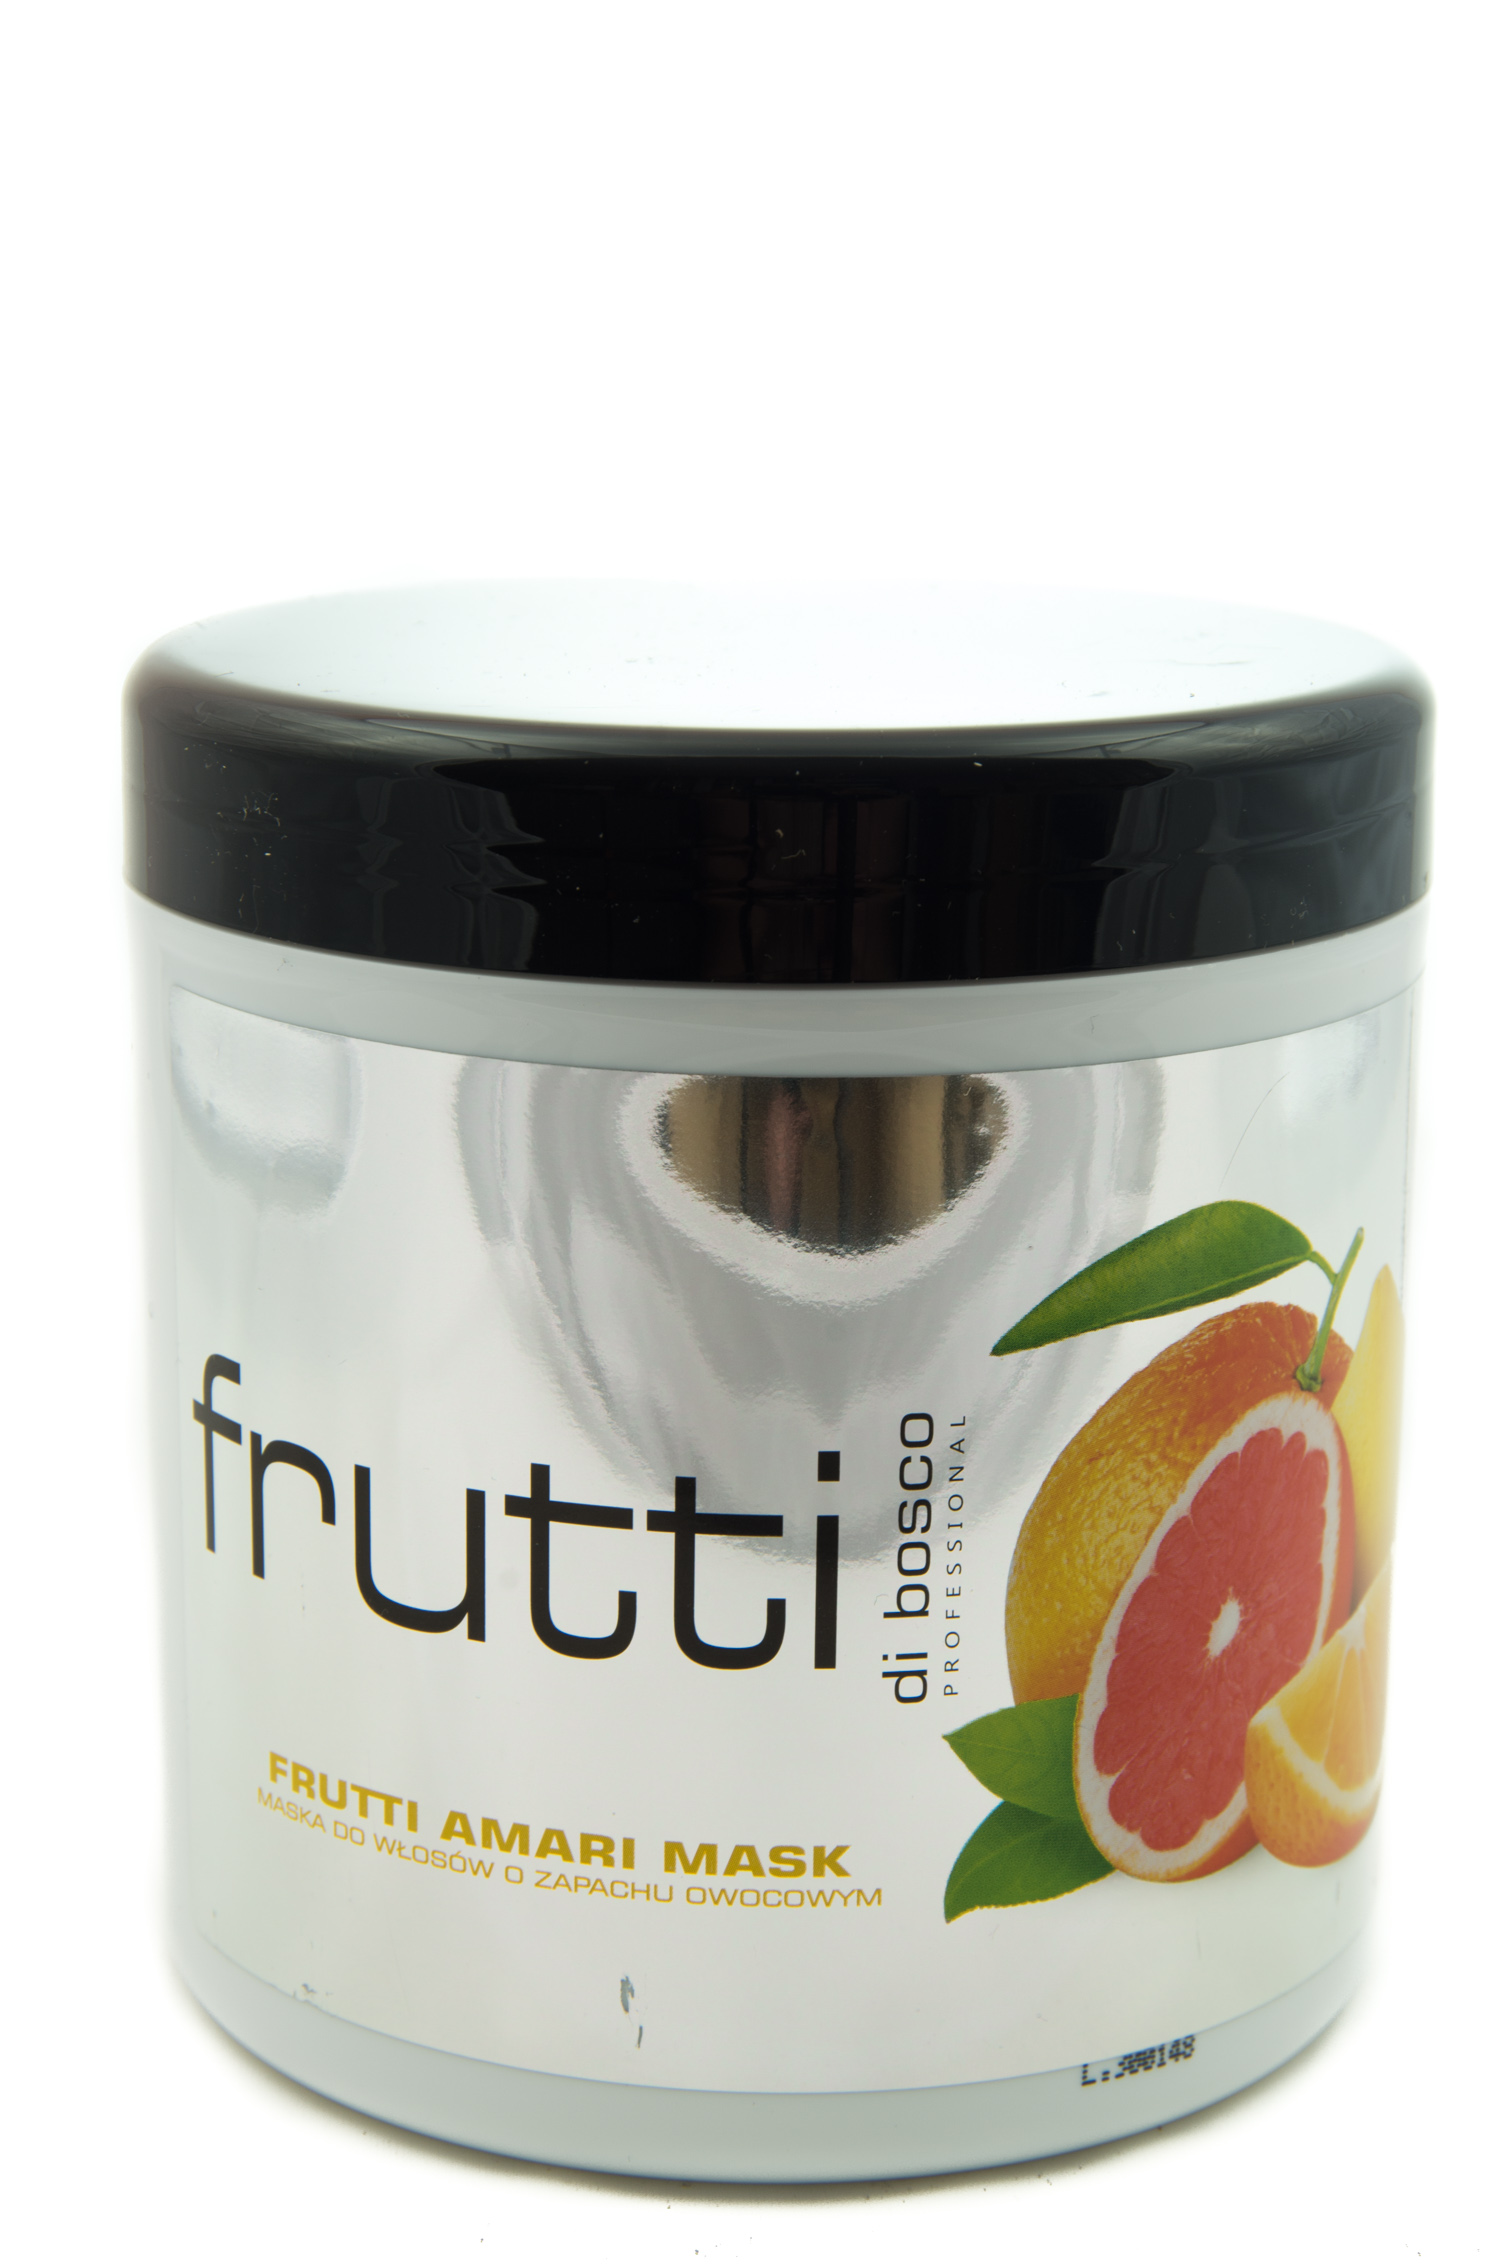 Maska Nawilżająca Frutti o zapachu Owocowym